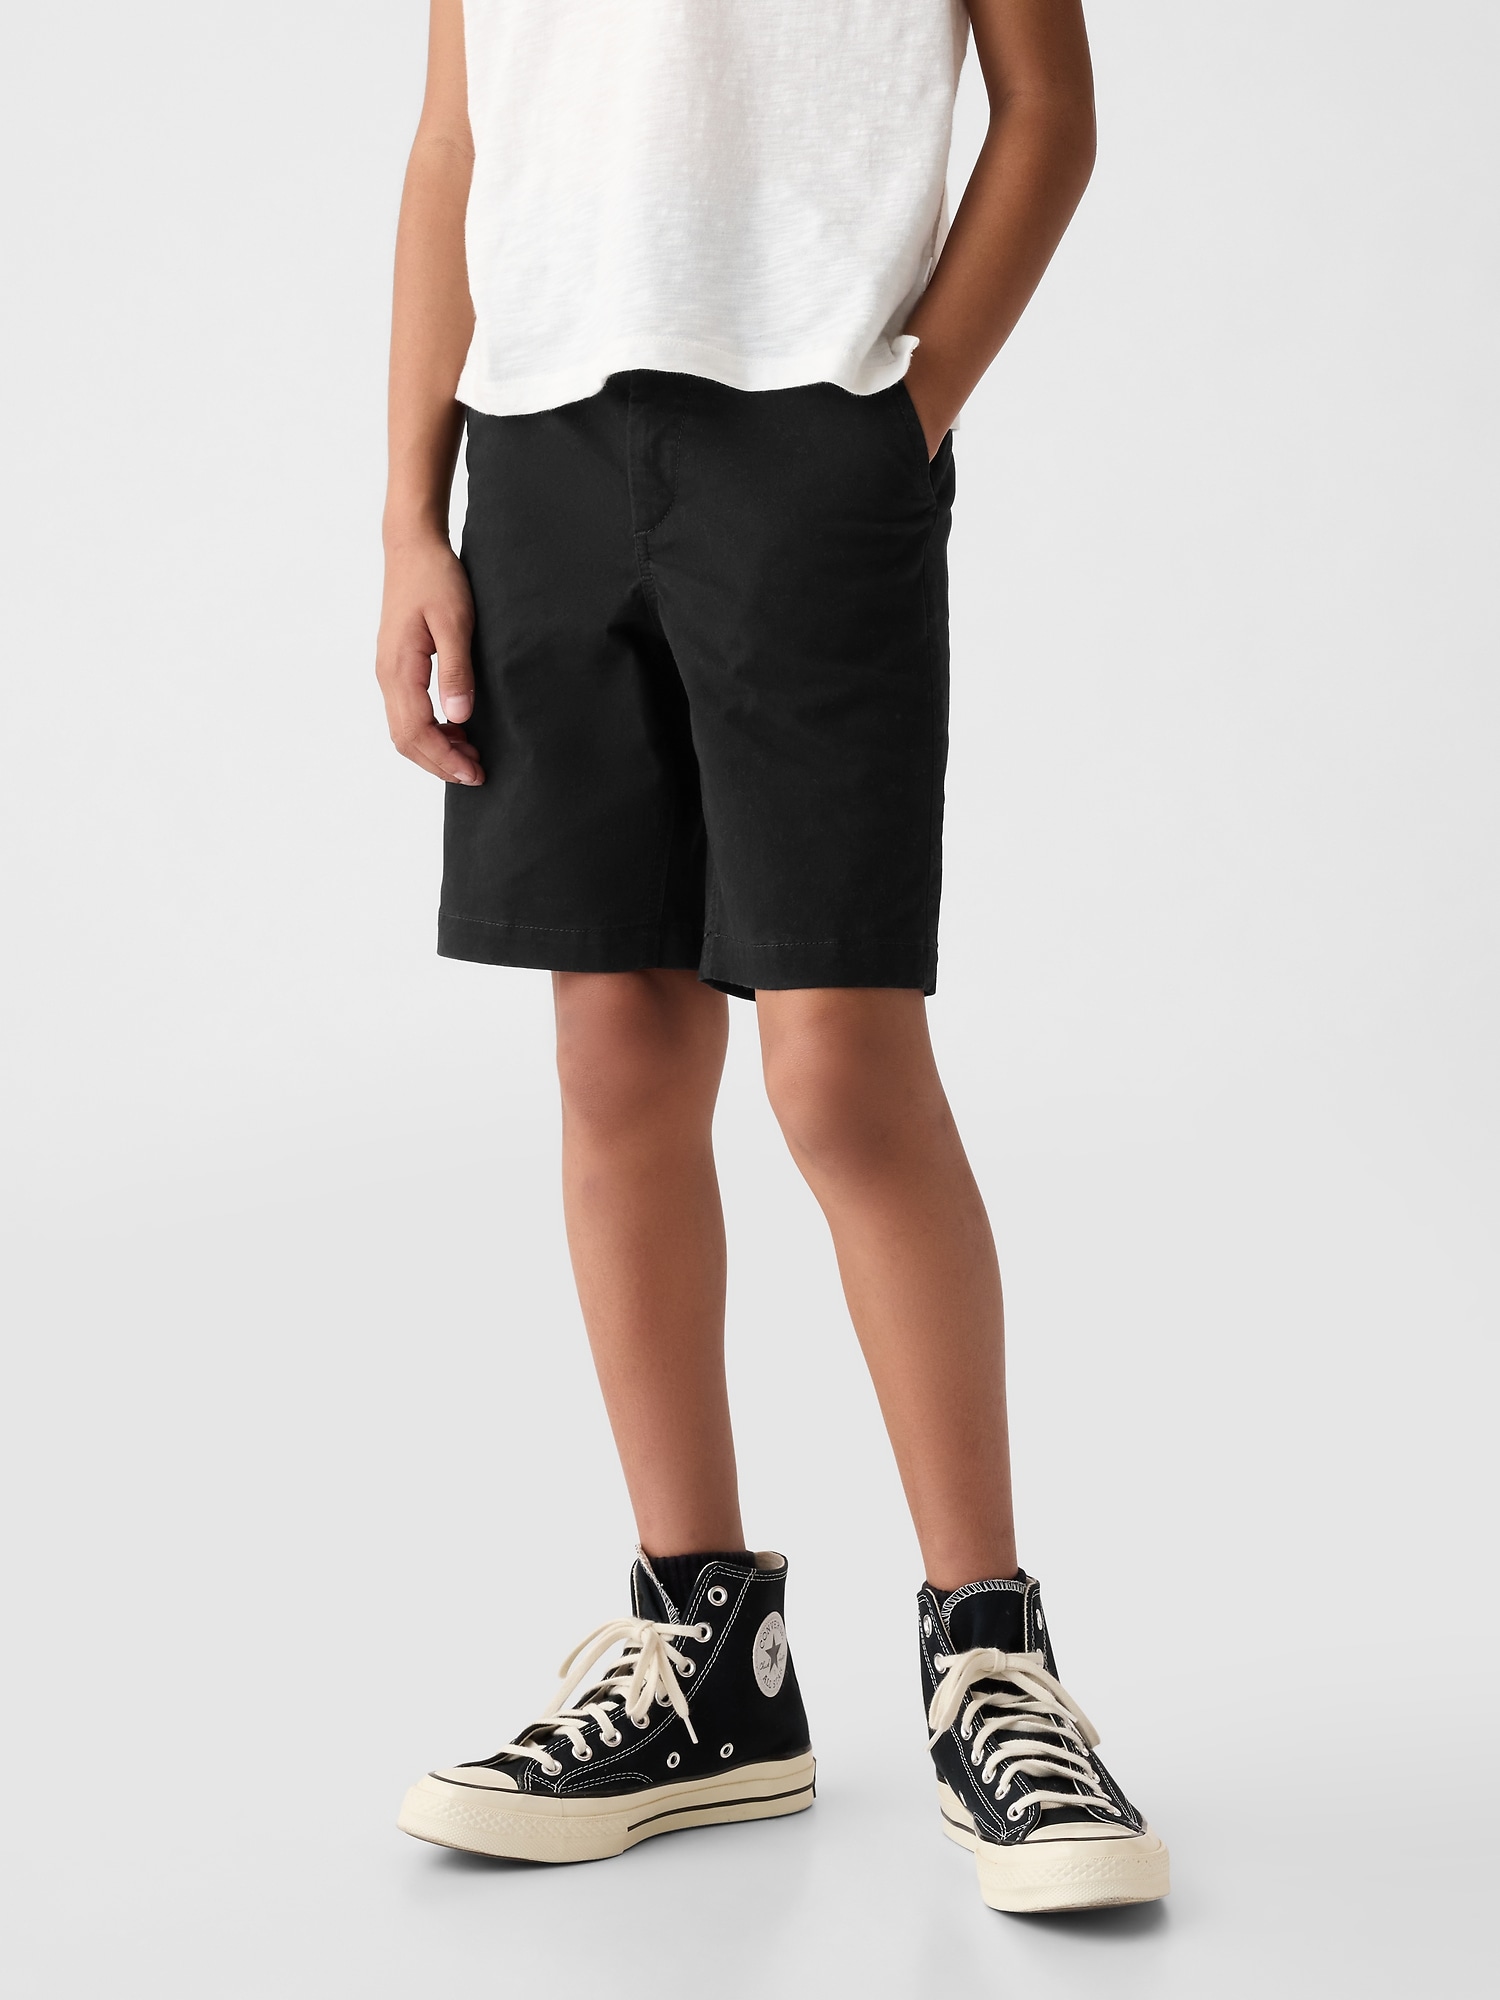 Kids Uniform Dressy Shorts